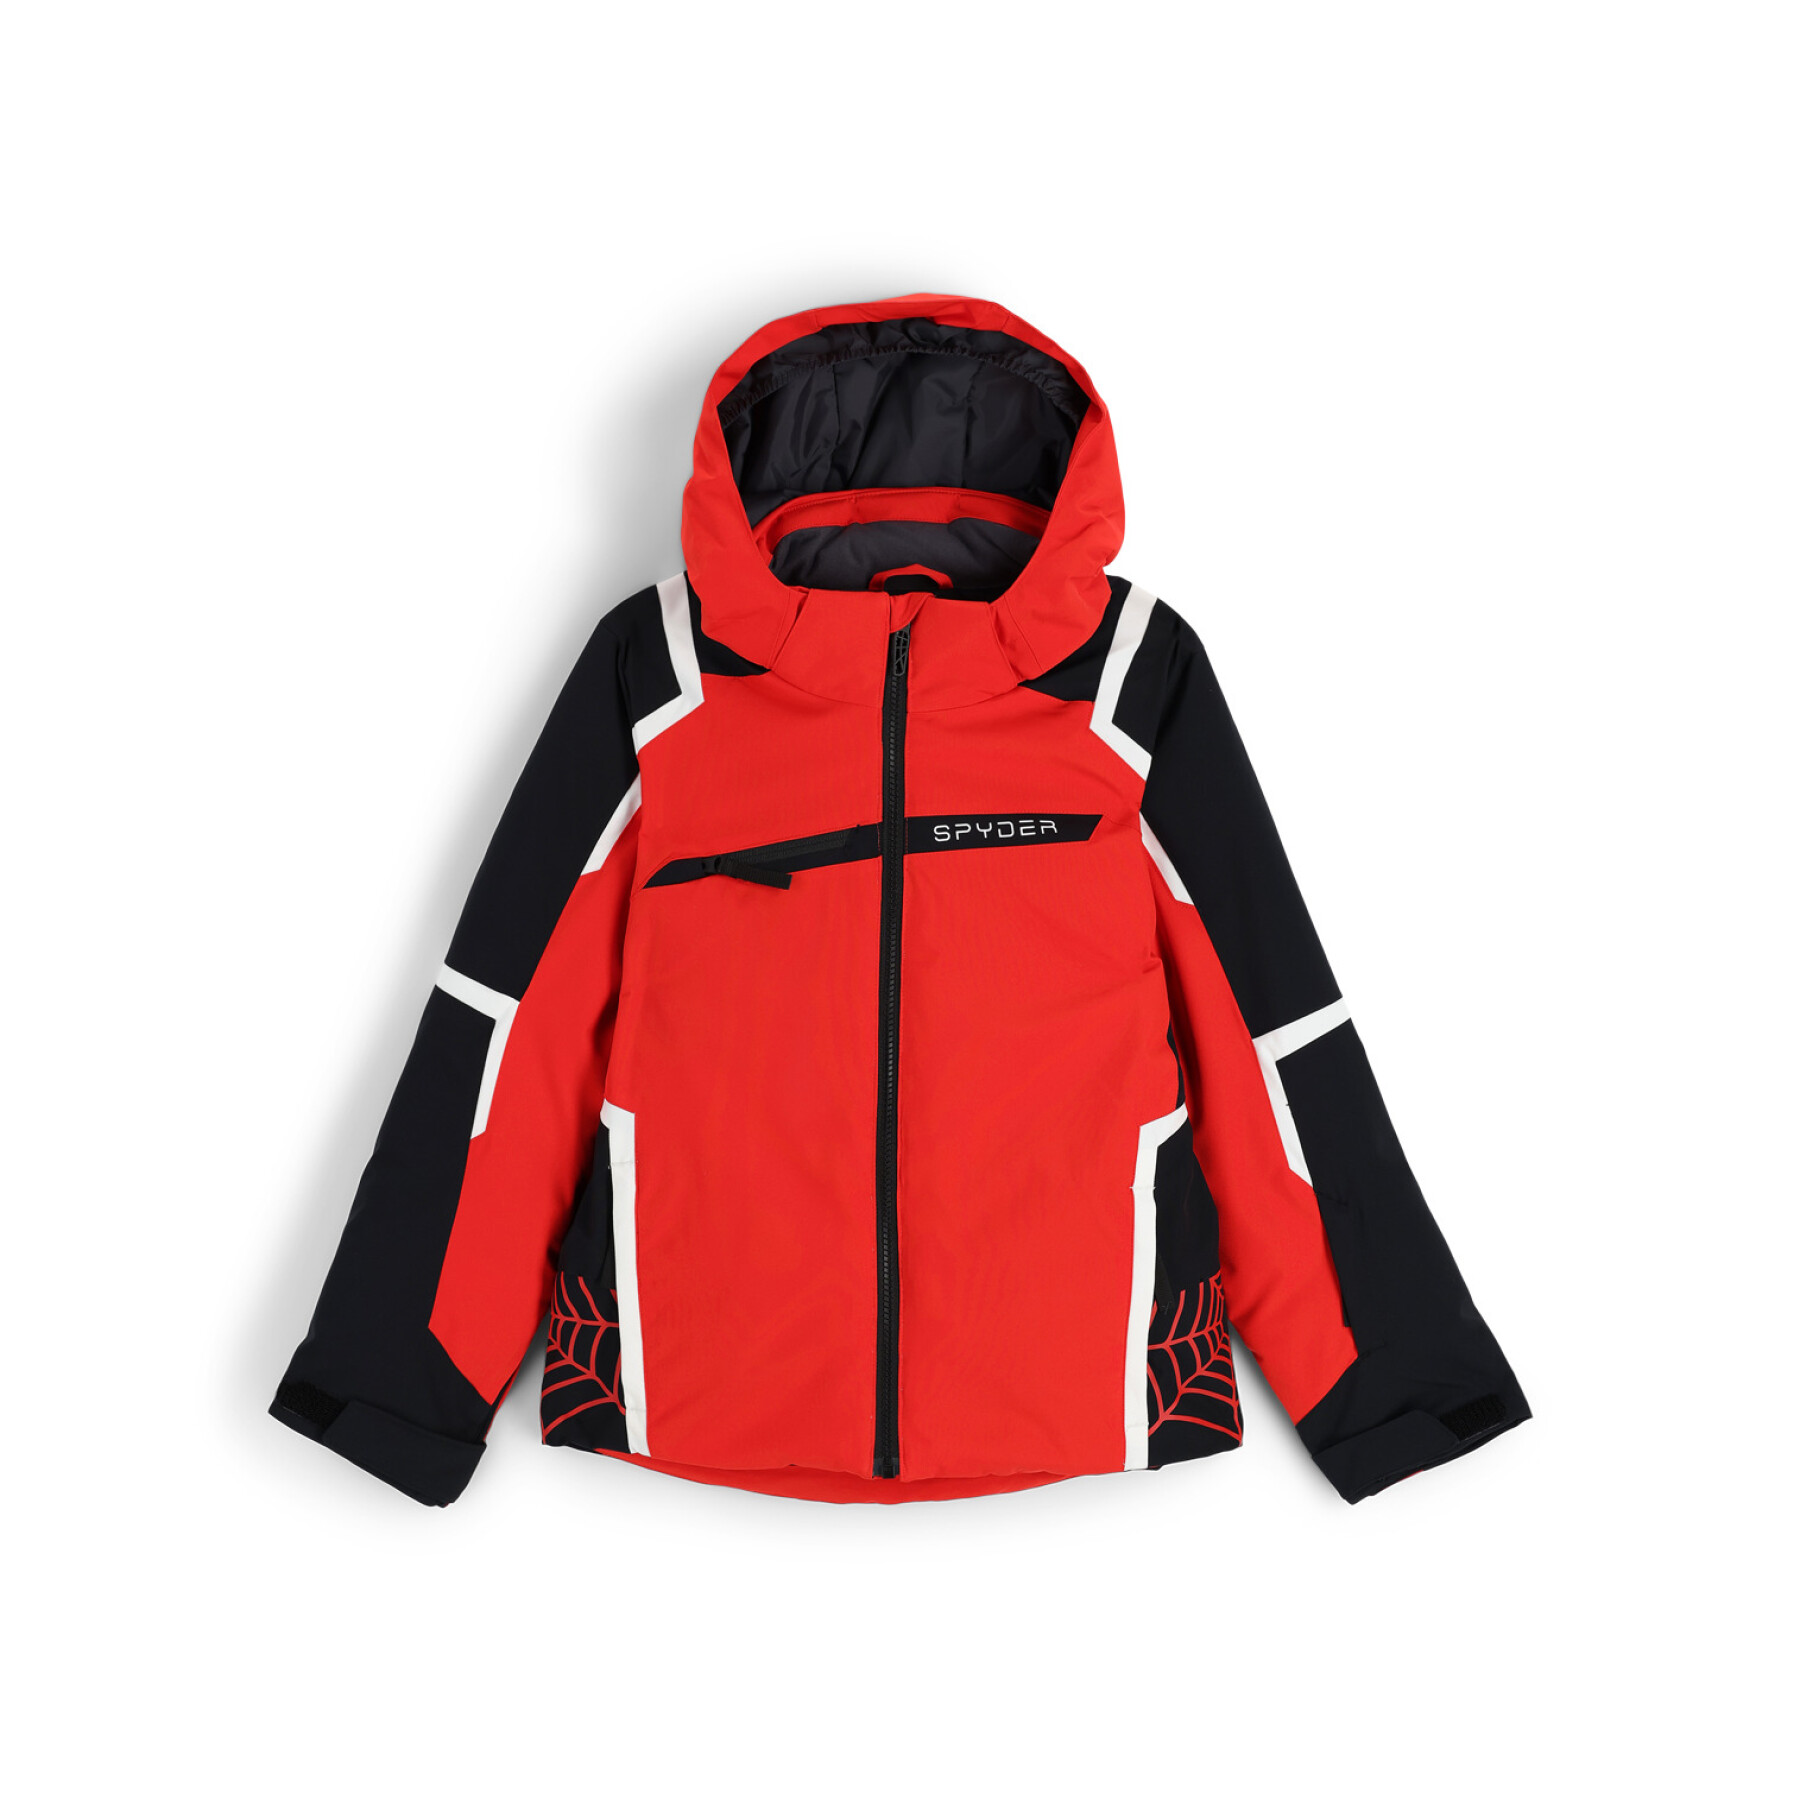 Children's ski jacket Spyder Challenger